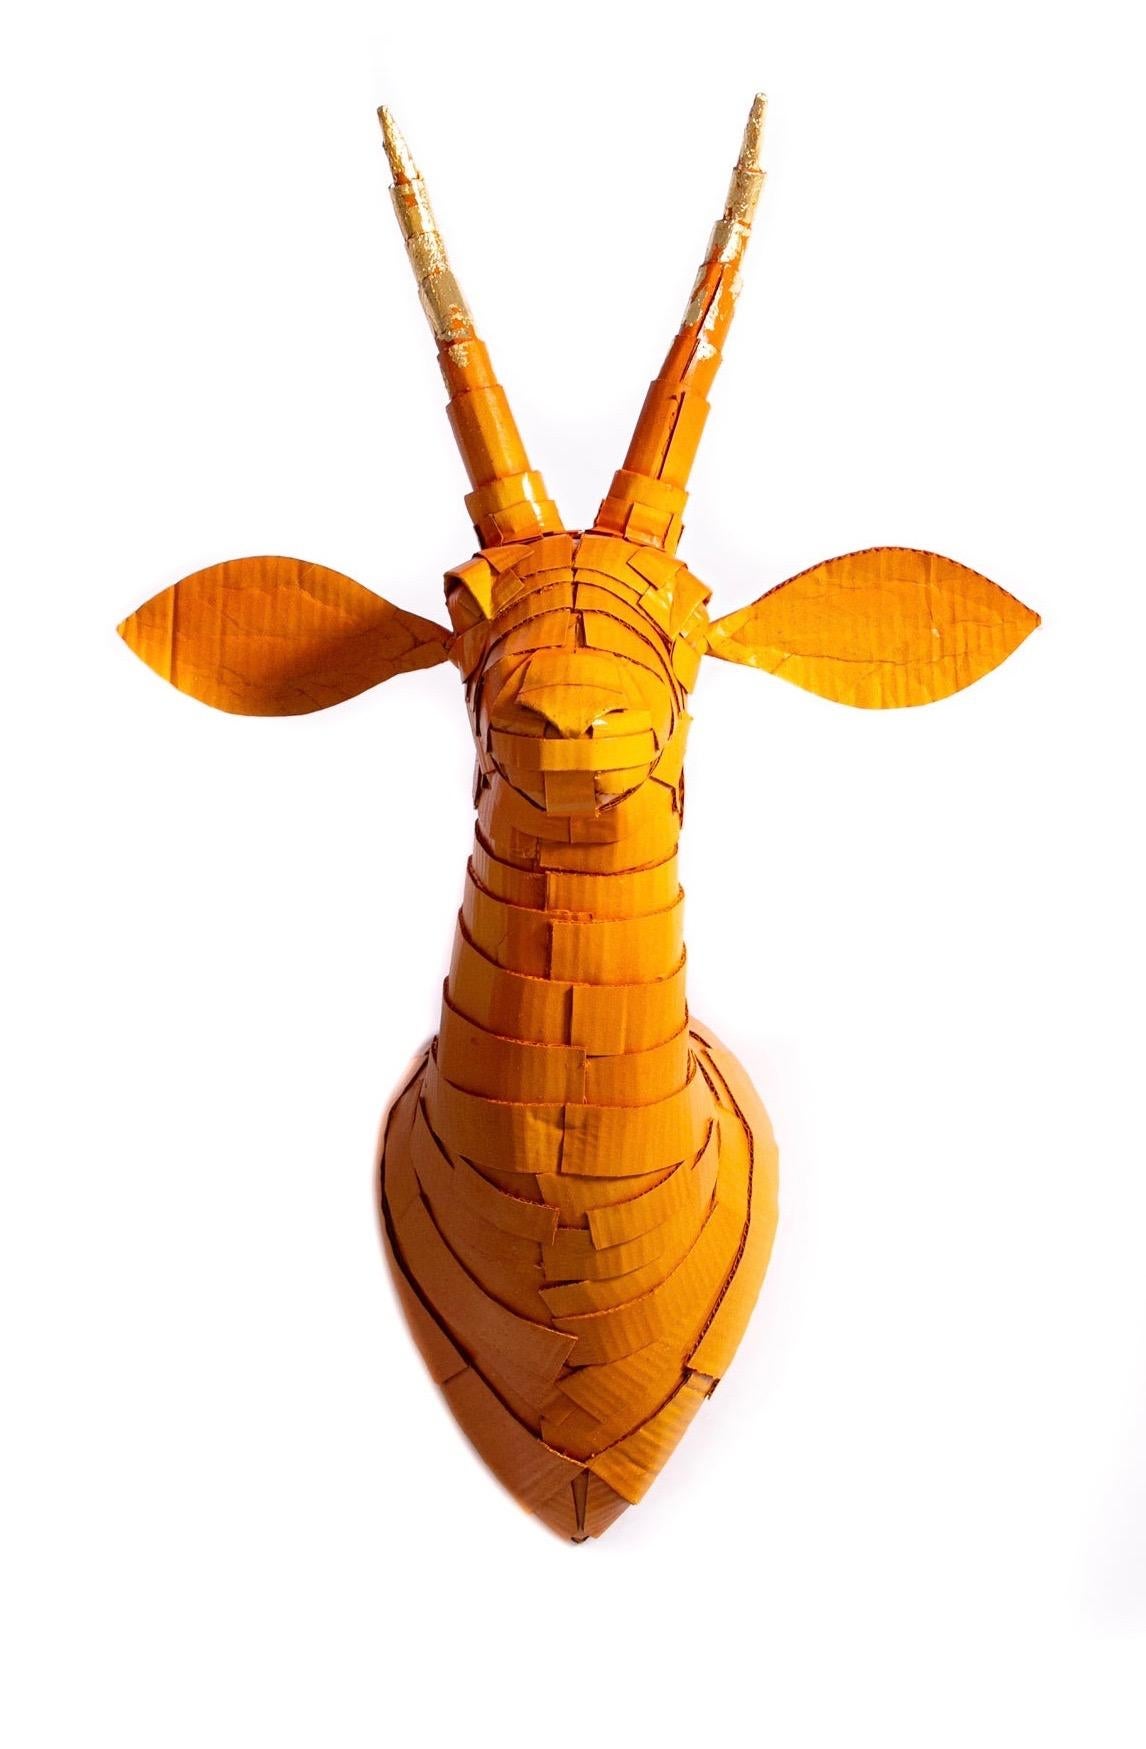 Gazelle n° 5 orange pêche avec détails en corne de feuille d'or - Art de Justin King